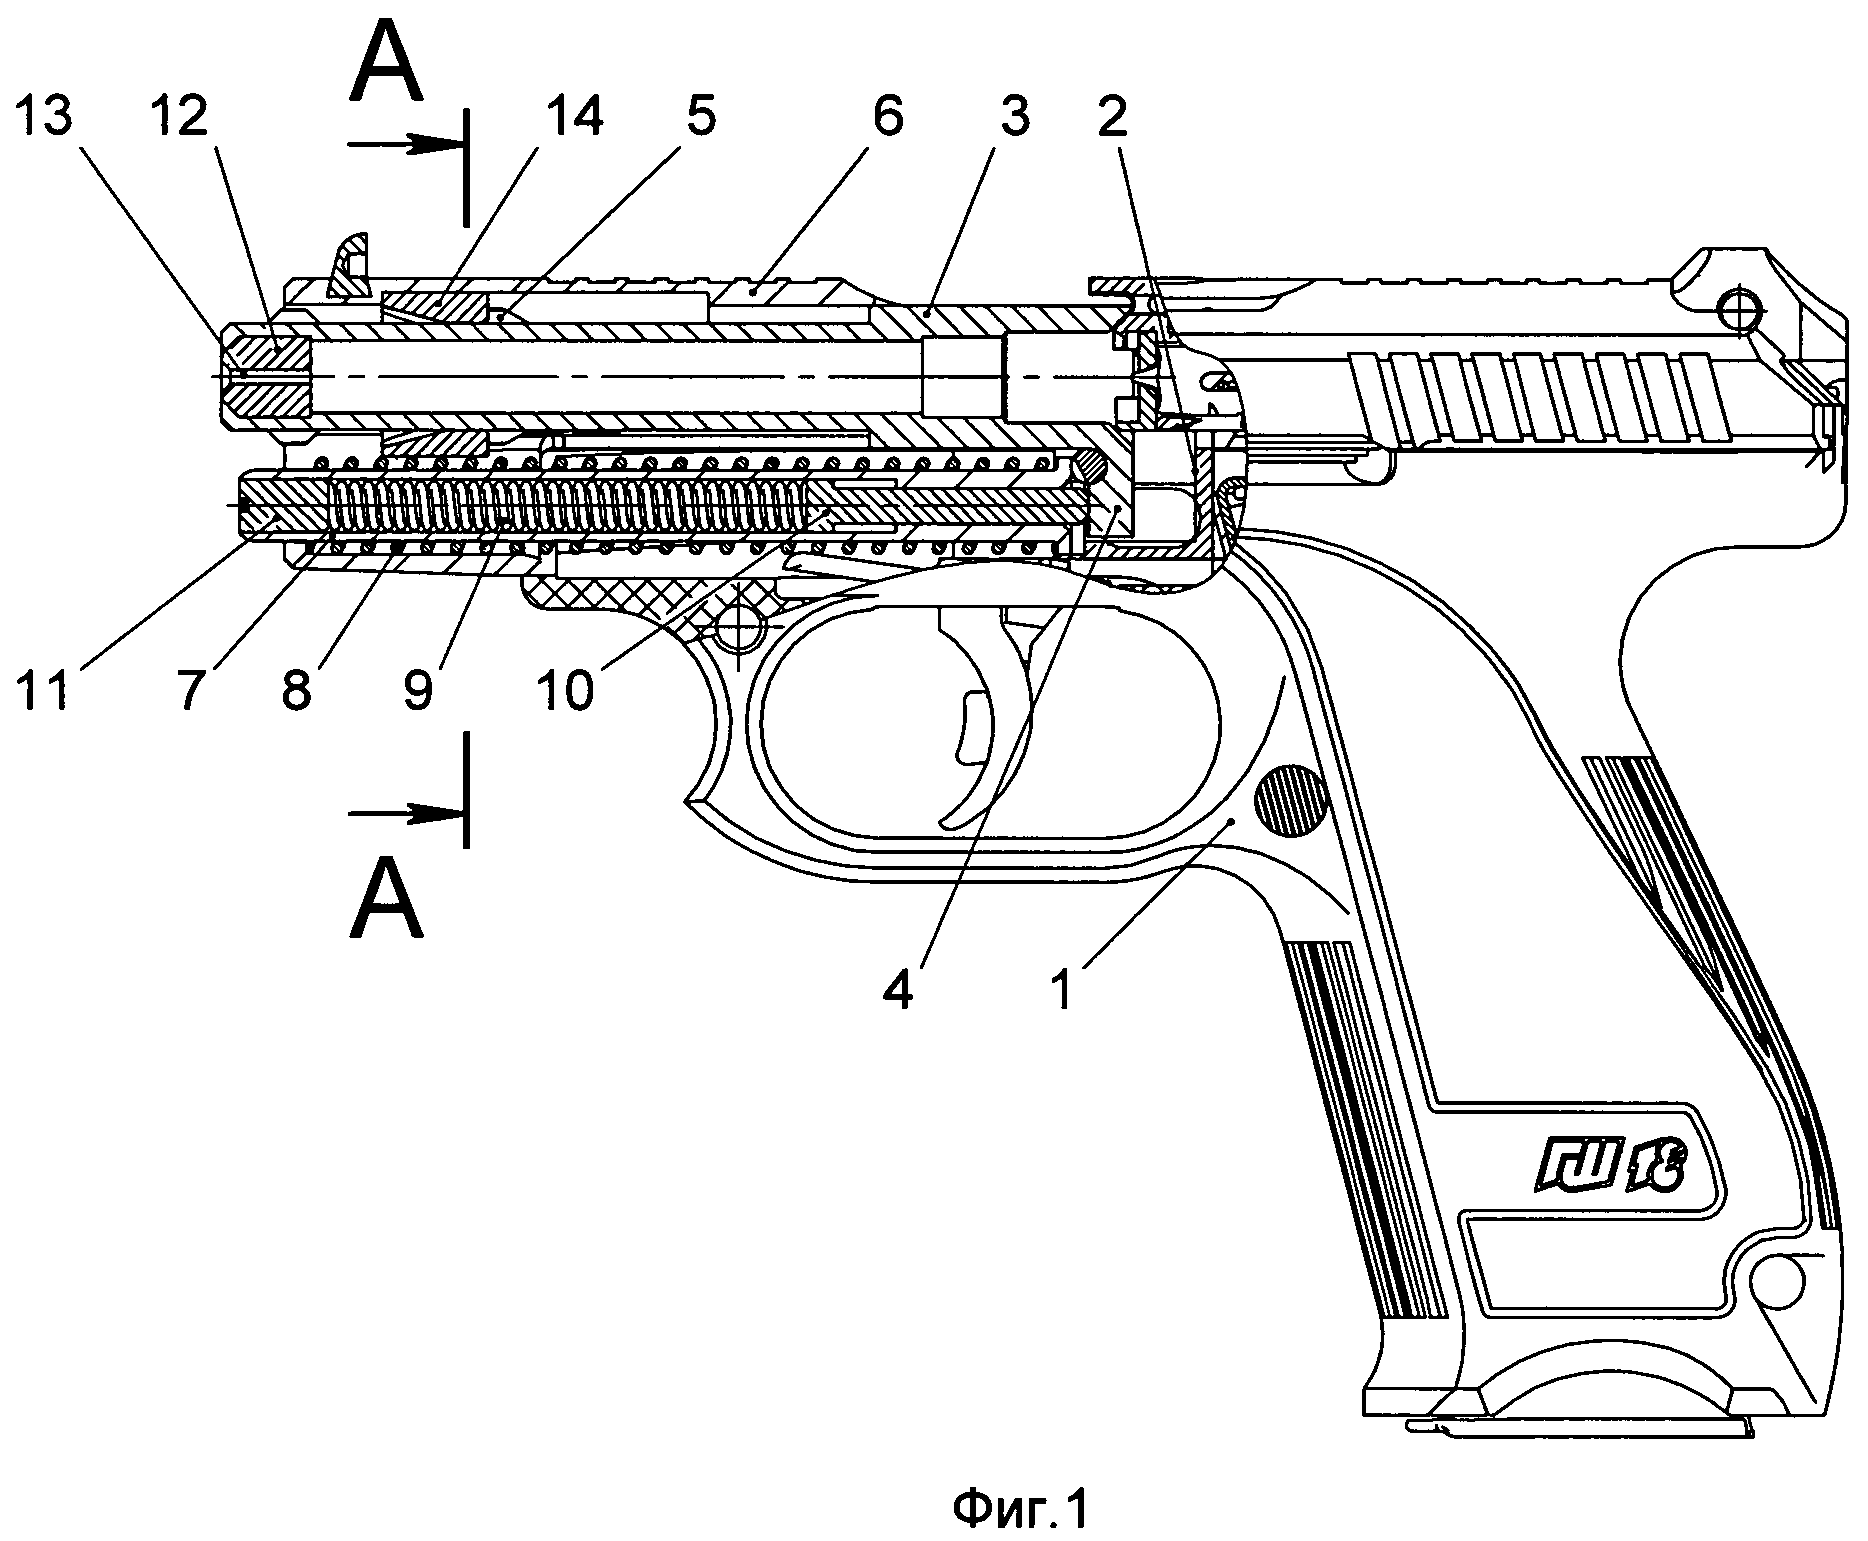 Пистолет ГШ-18 схема